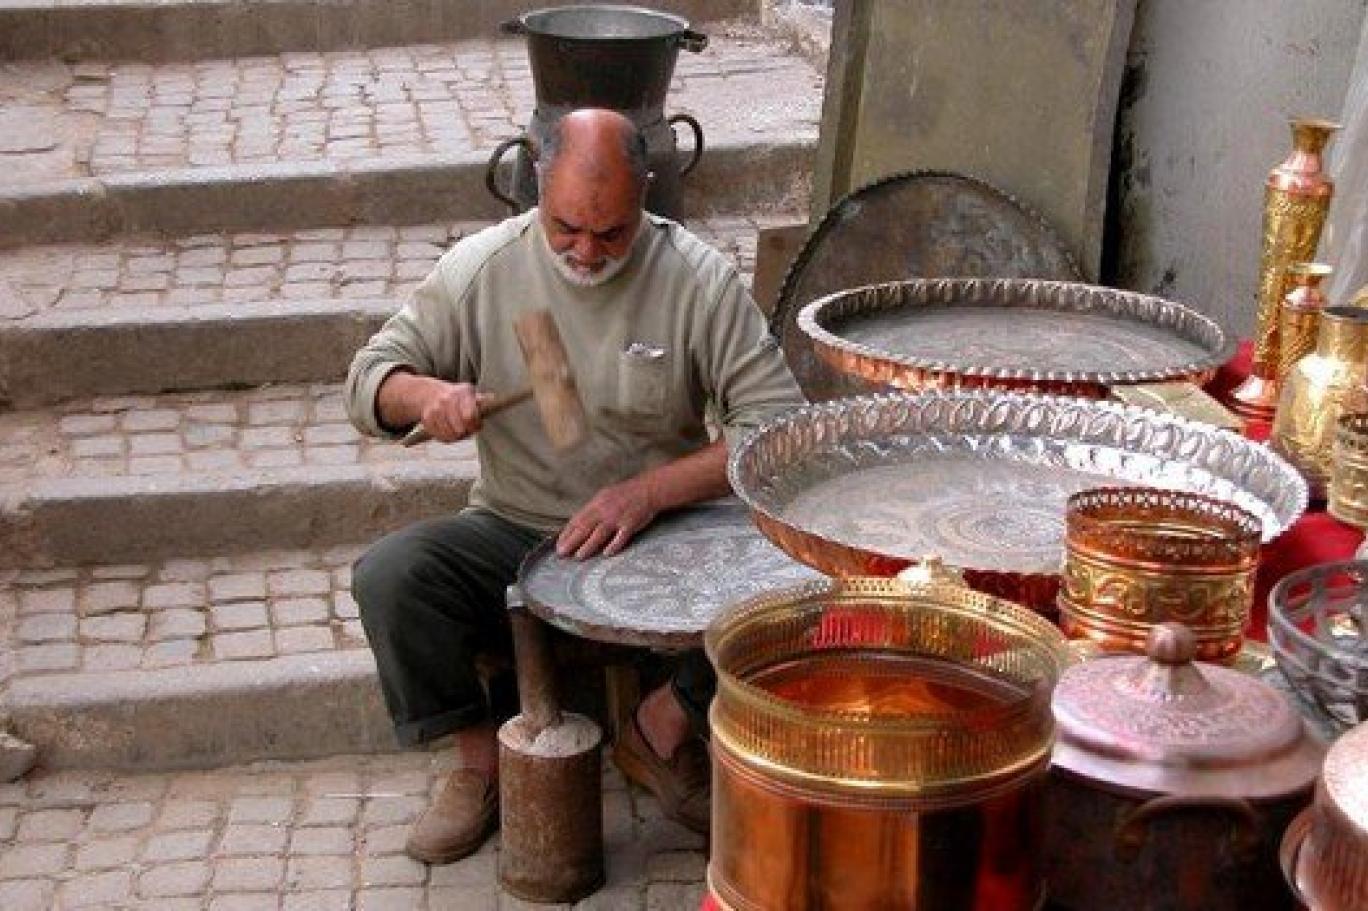 الصناعات التقليدية في الجزائر واهميتها | أسباب تنوع الصناعات التقليدية في الجزائر